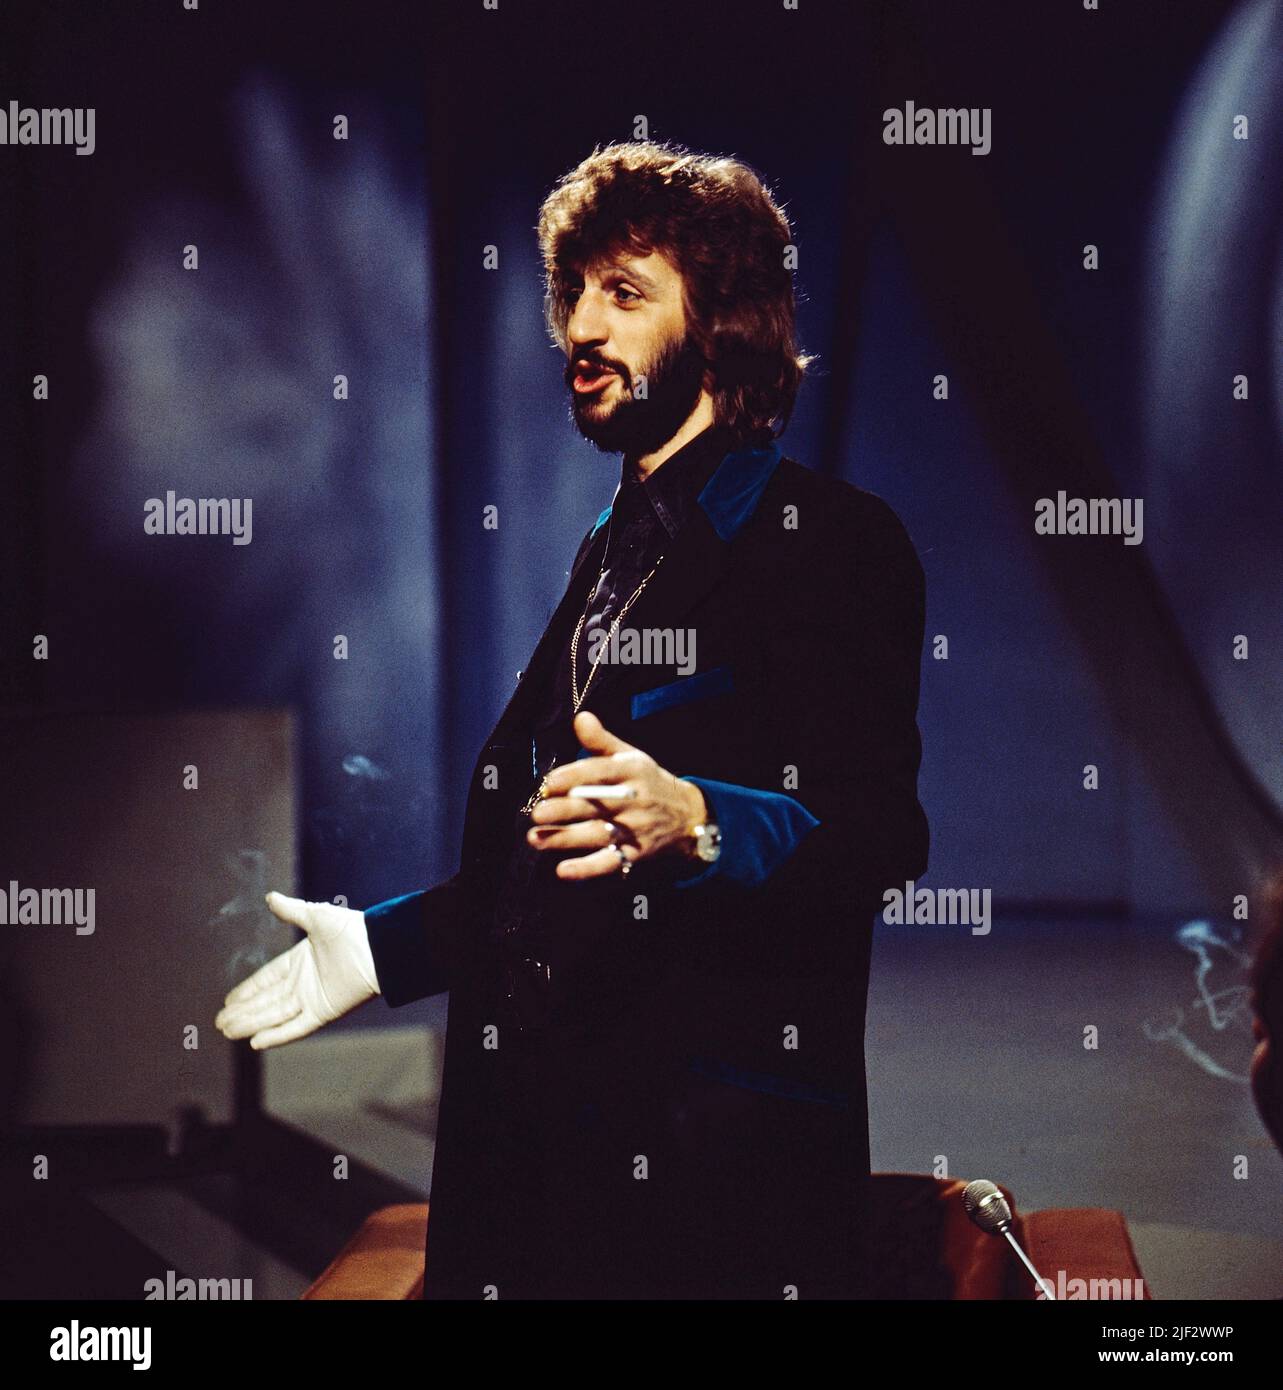 Ringo Starr, eigentlich Richard Starkey, britischer Musiker, berühmter Schlagzeuger der Band The Beatles, hier in einer TV-Sendung, circa 1971. Ringo Starr, vero nome Richard Starkey, musicista britannico, famoso batterista della band The Beatles, qui in un programma televisivo, circa 1971. Foto Stock